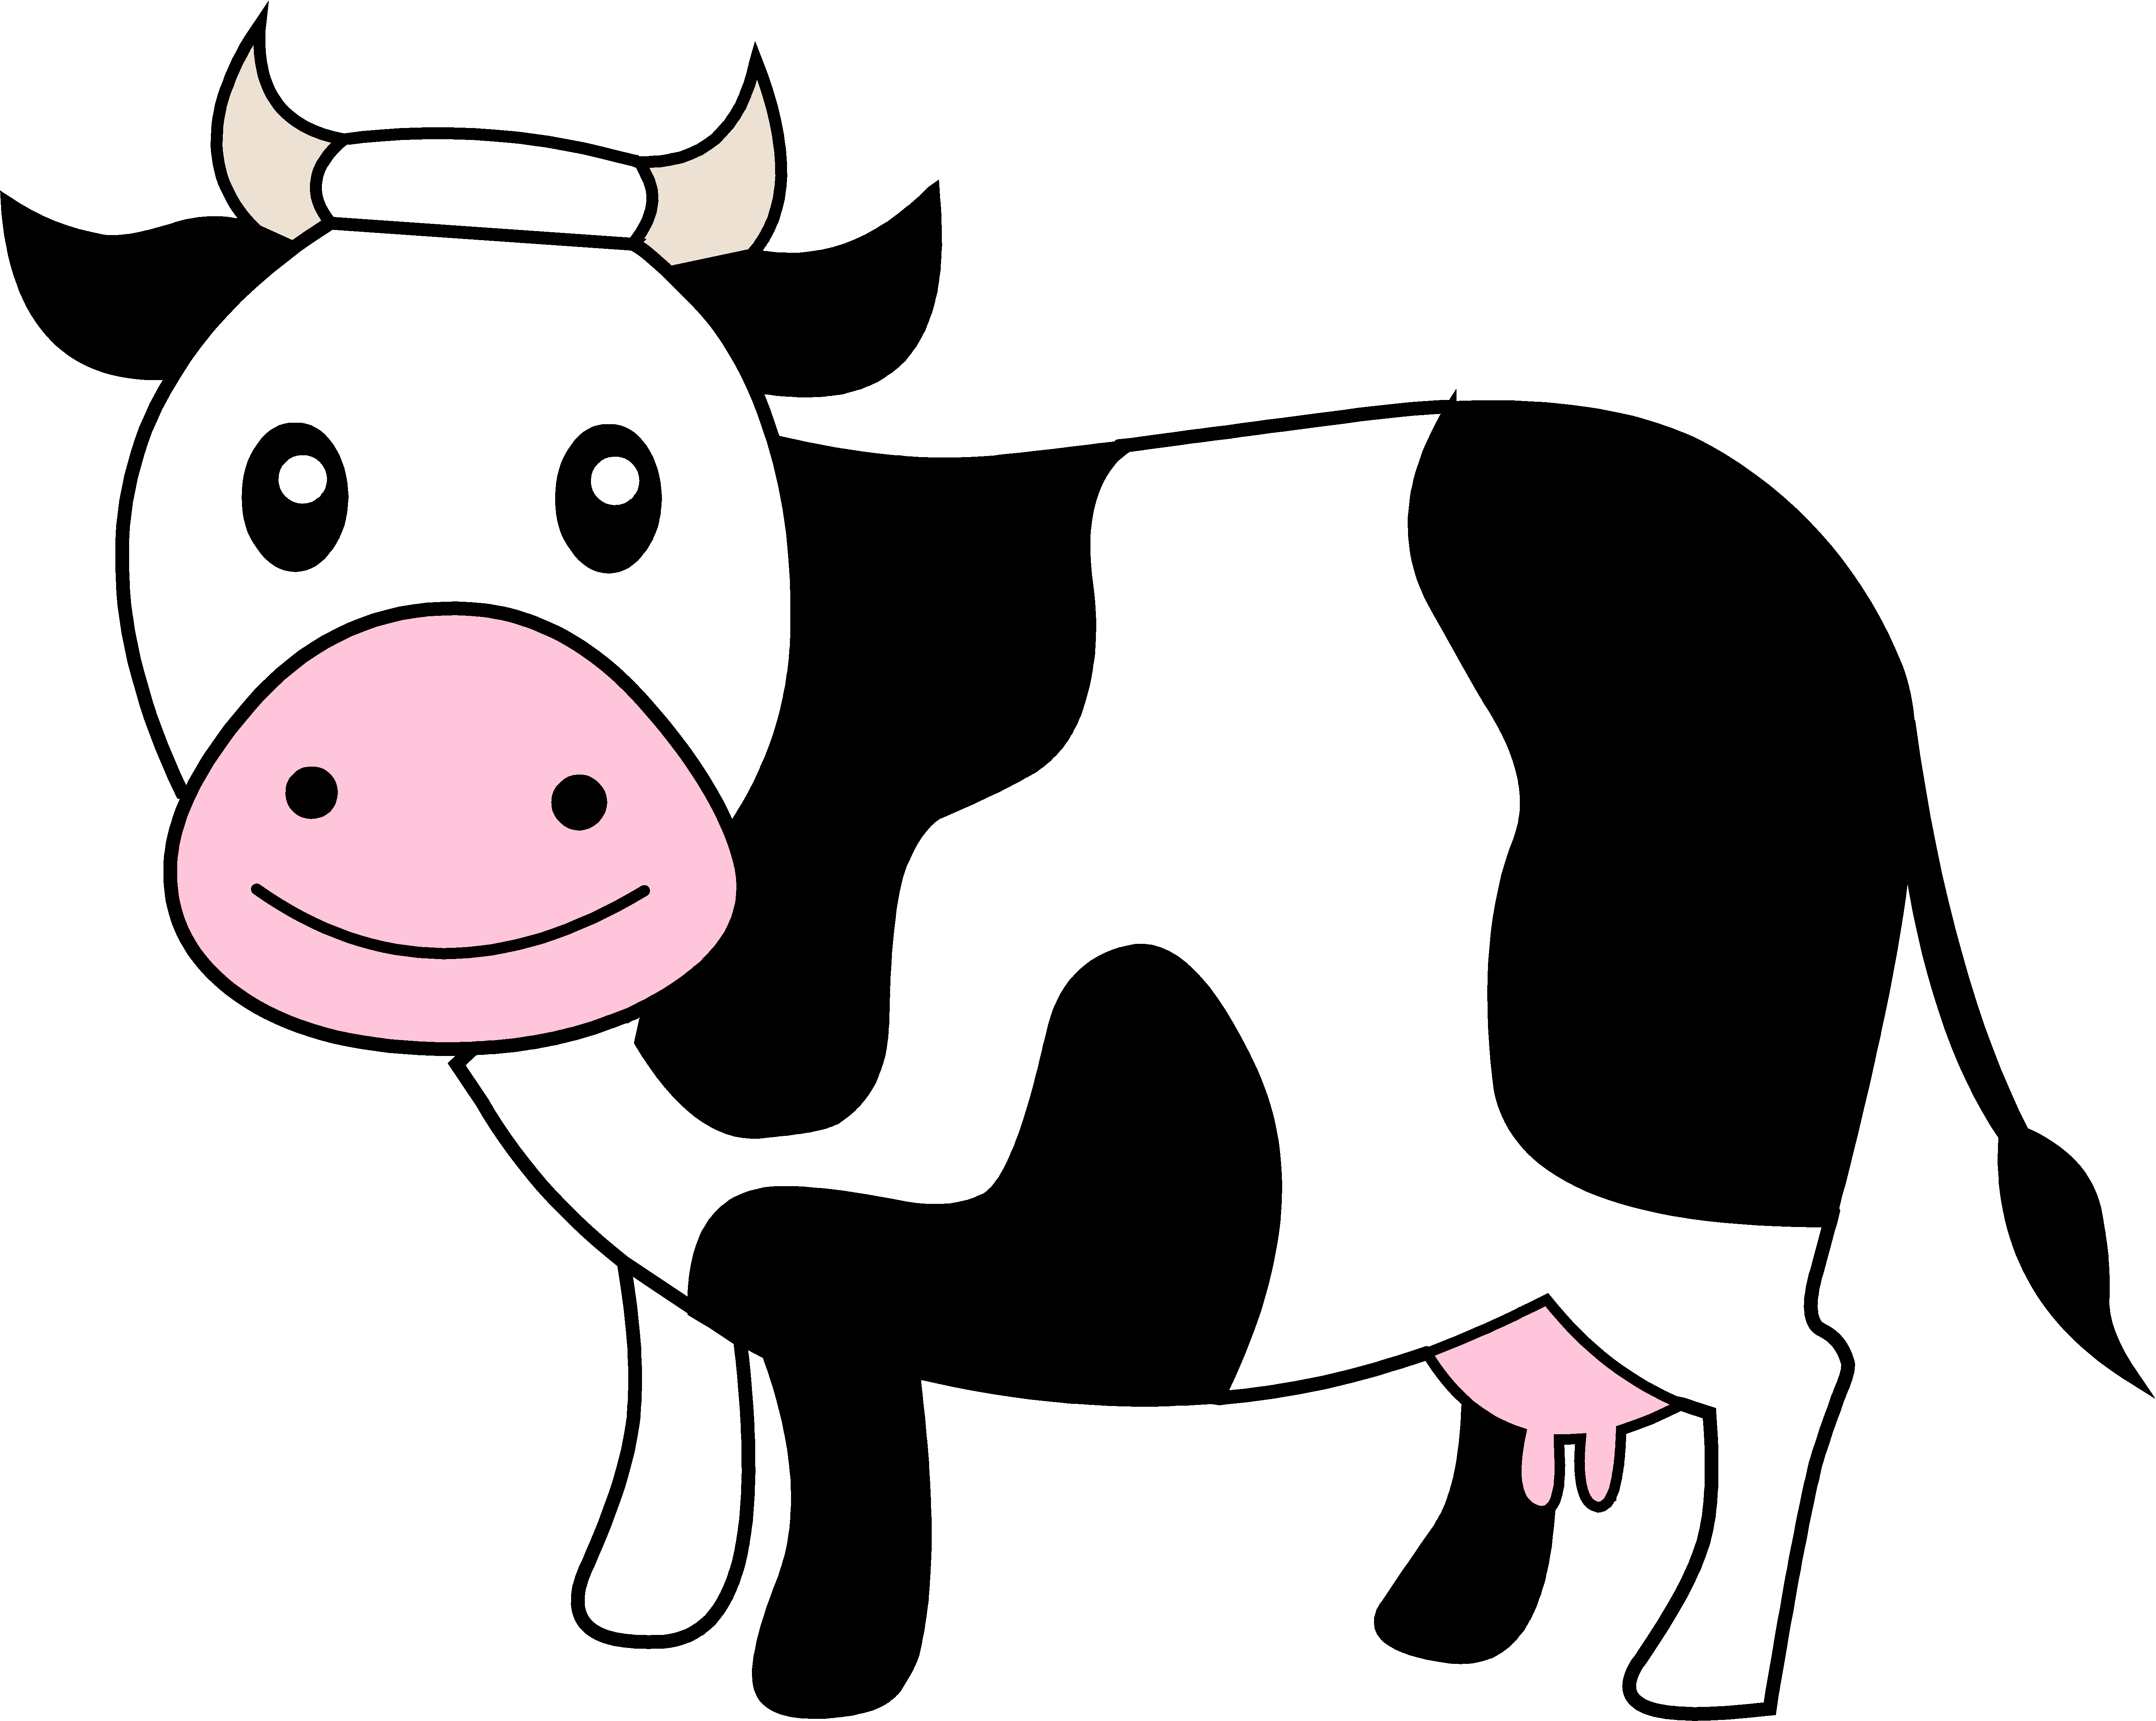 Cartoon Cow Face - Cliparts.co